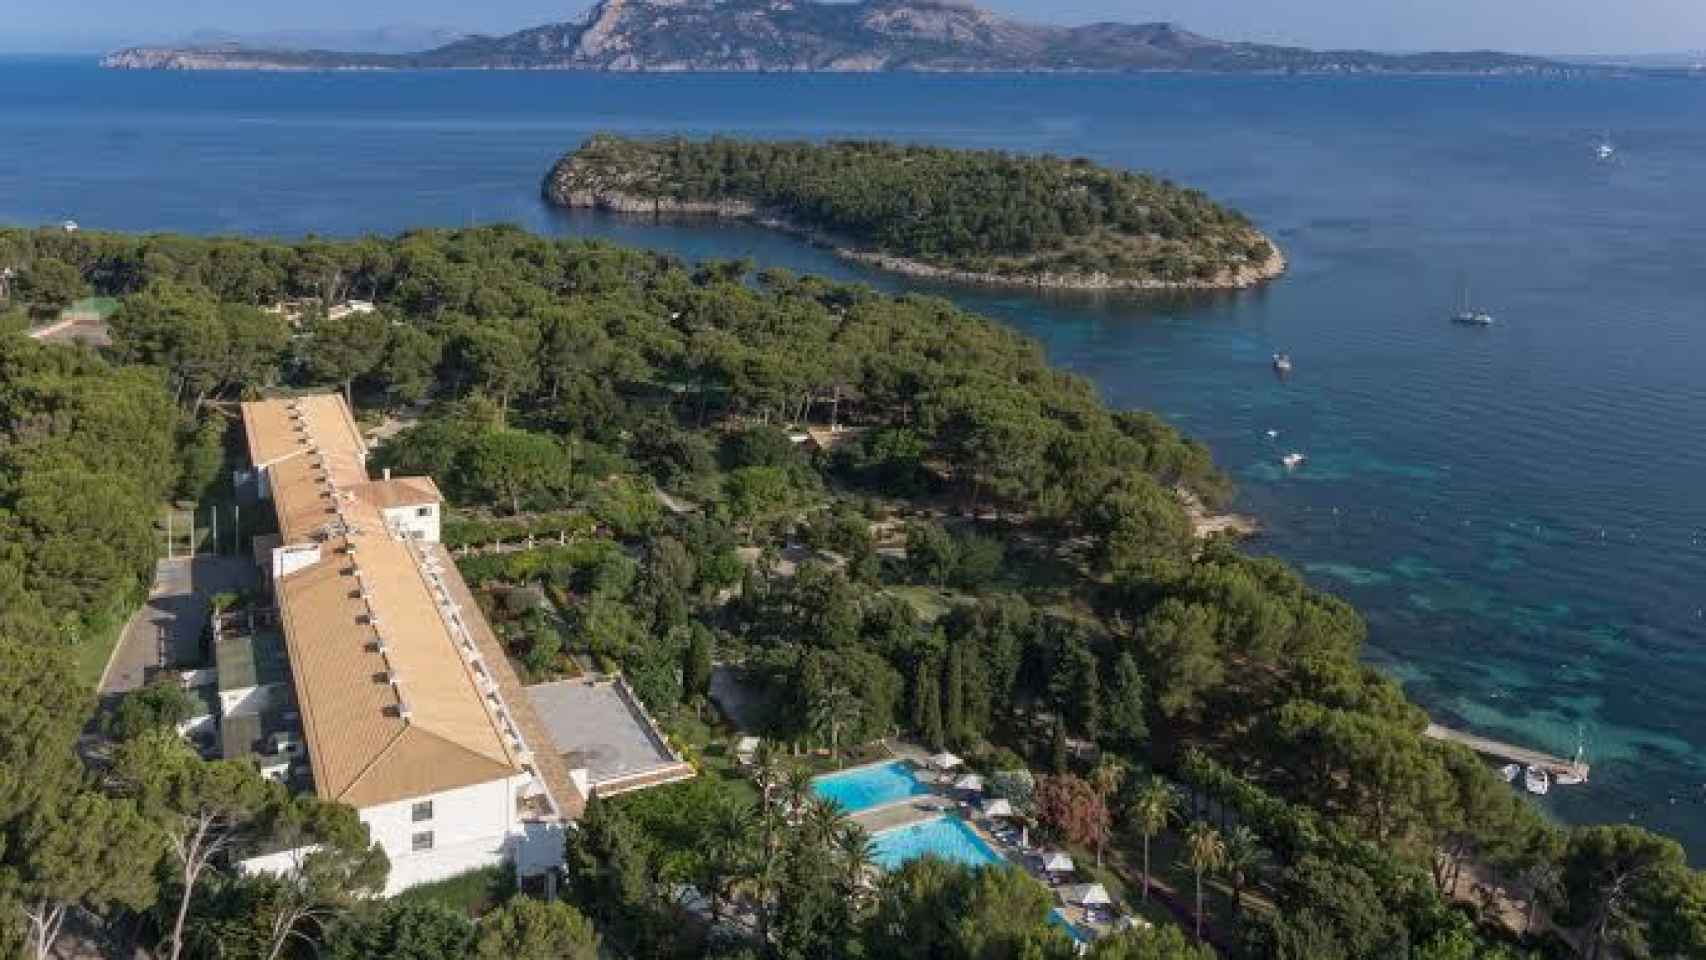 Vista aérea del hotel Formentor, el punto más la norte de Mallorca.